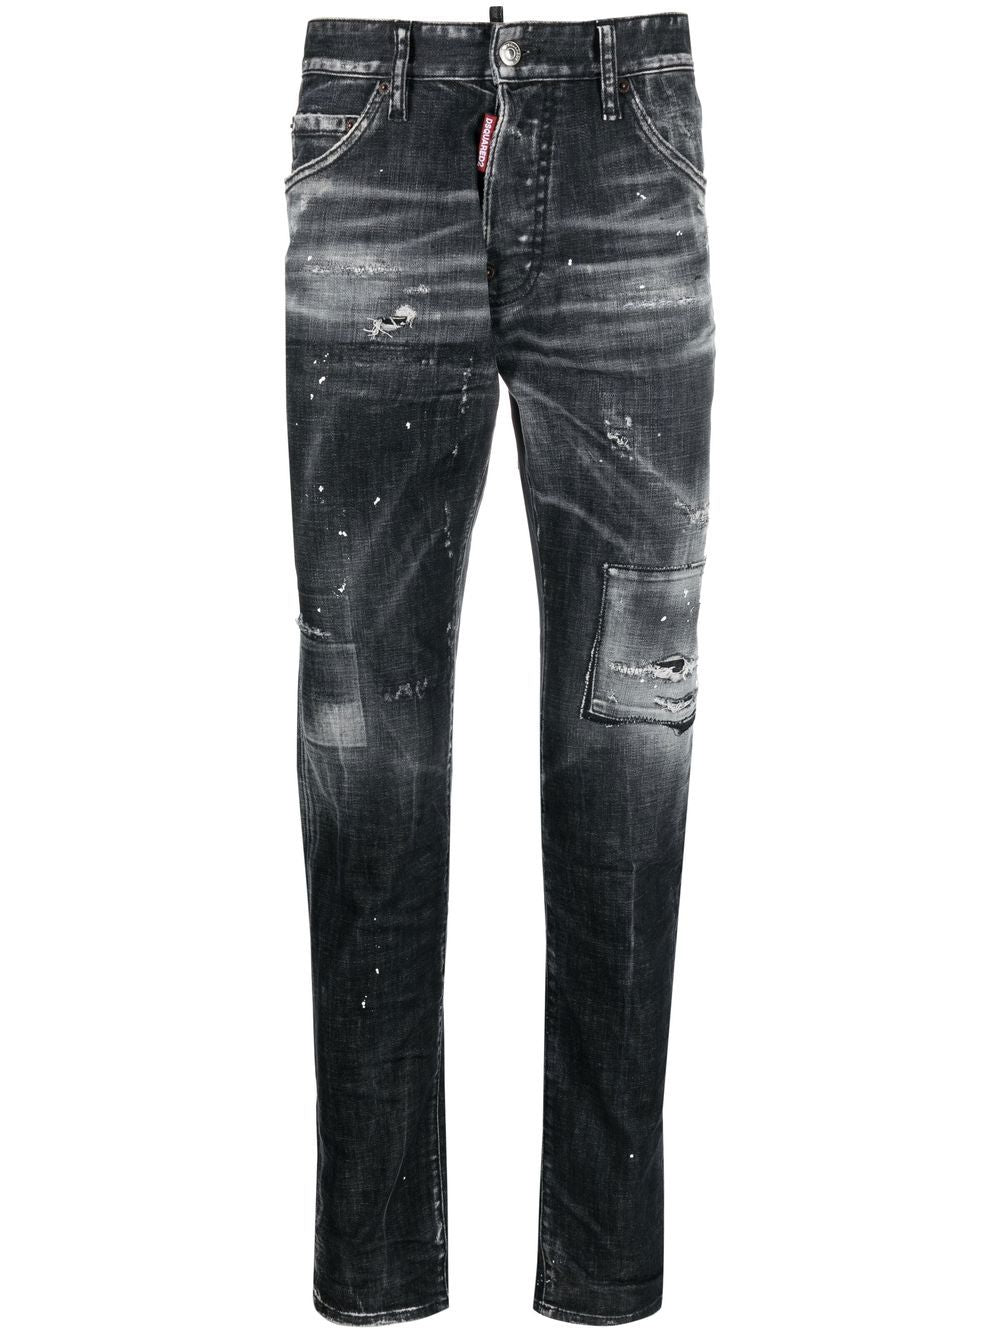 عبايات جينز أصلية باللون الأسود وتصميم مميز من 1964